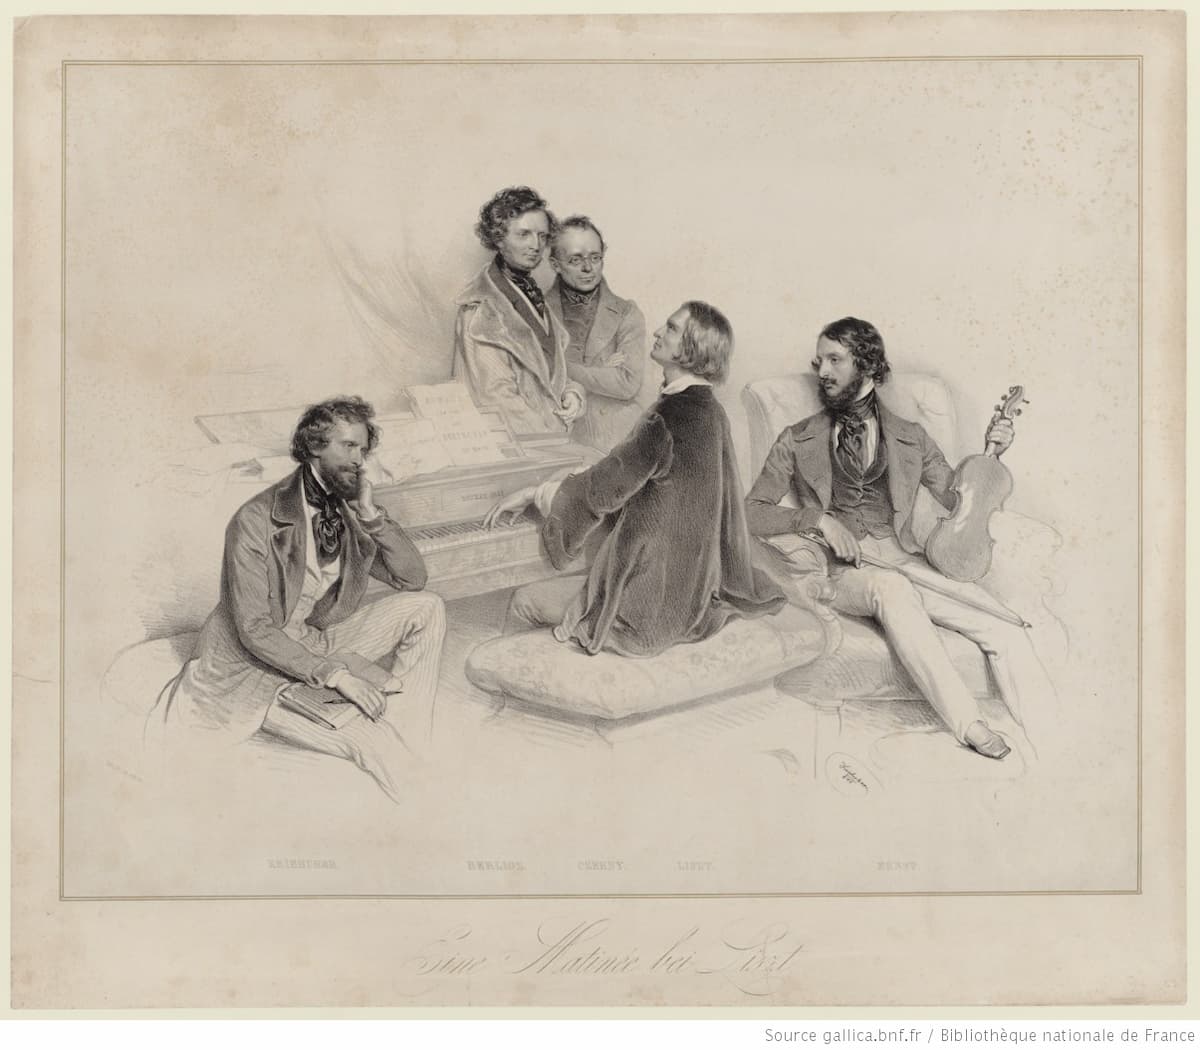 Kriehuber: Ein Matinée bei Liszt (with L to R: Kreihuber, Berlioz, Carl Czerny, and Heinrich Ernst around List at the piano), 1846 (Gallica, ark:/12148/btv1b84265236)